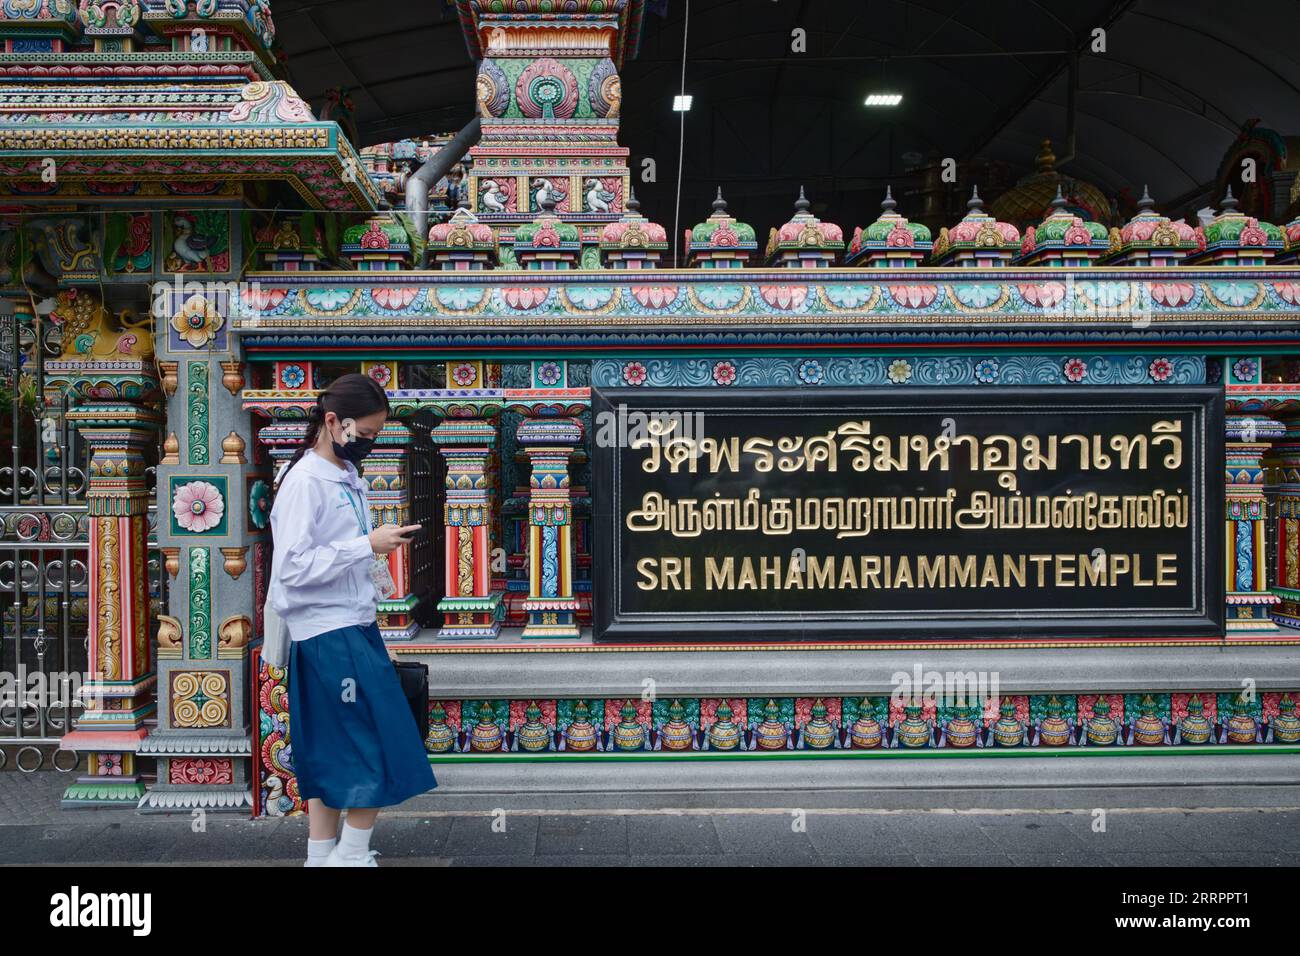 Une écolière thaïlandaise passe devant le temple Sri Mahamariammam (hindou) de style tamoul sur Silom Road, Bangkok Thaïlande Banque D'Images